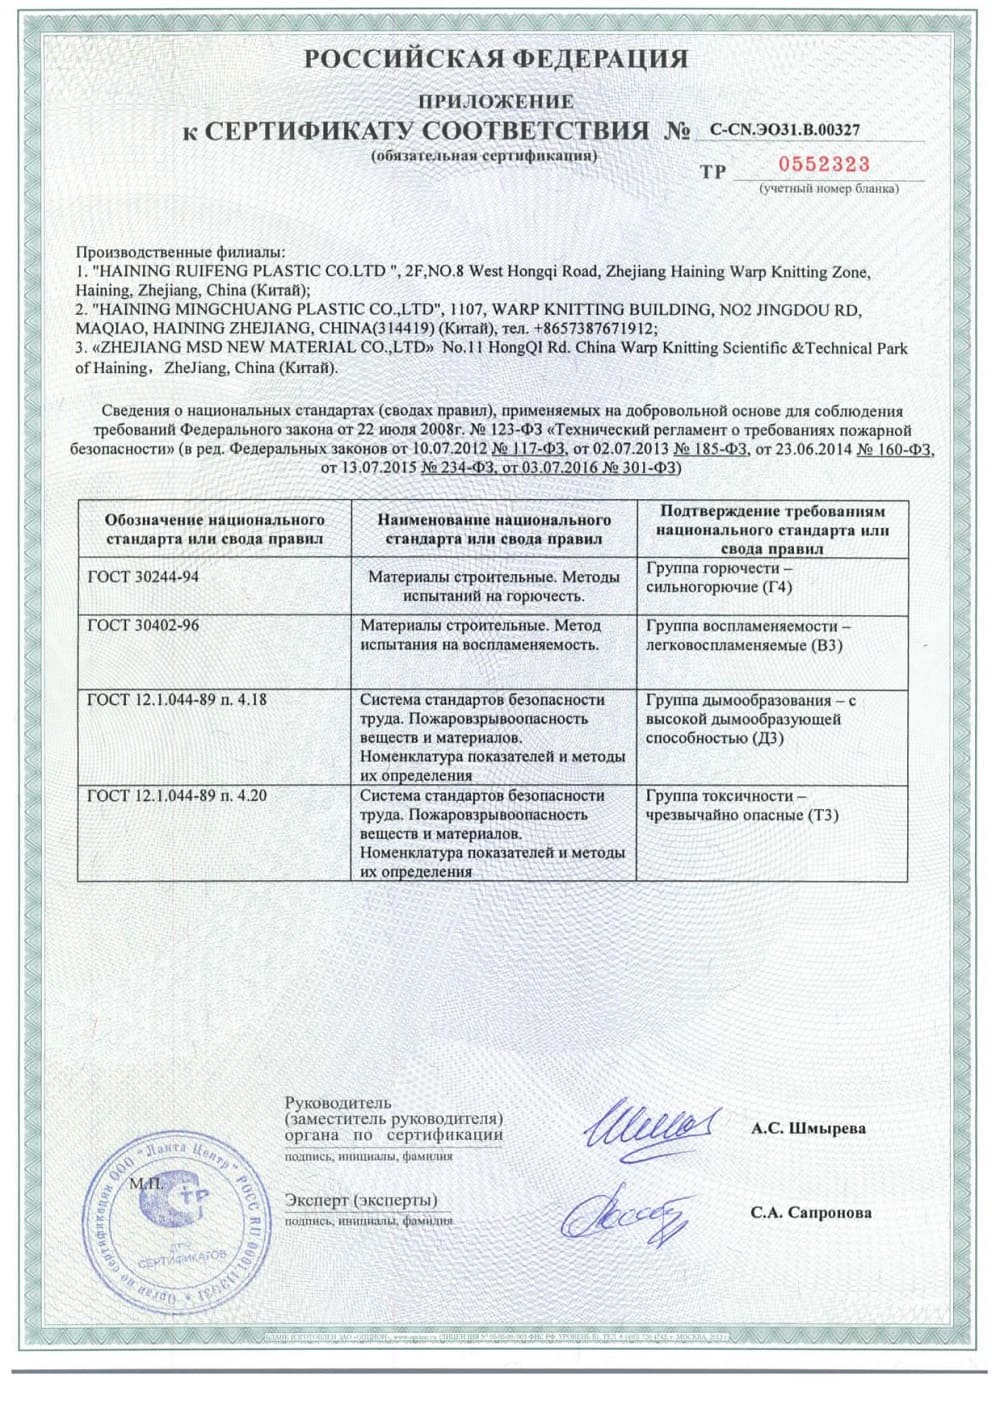 Сертификат соответствия на натяжные полотна для двухуровневых потолков с подсветкой